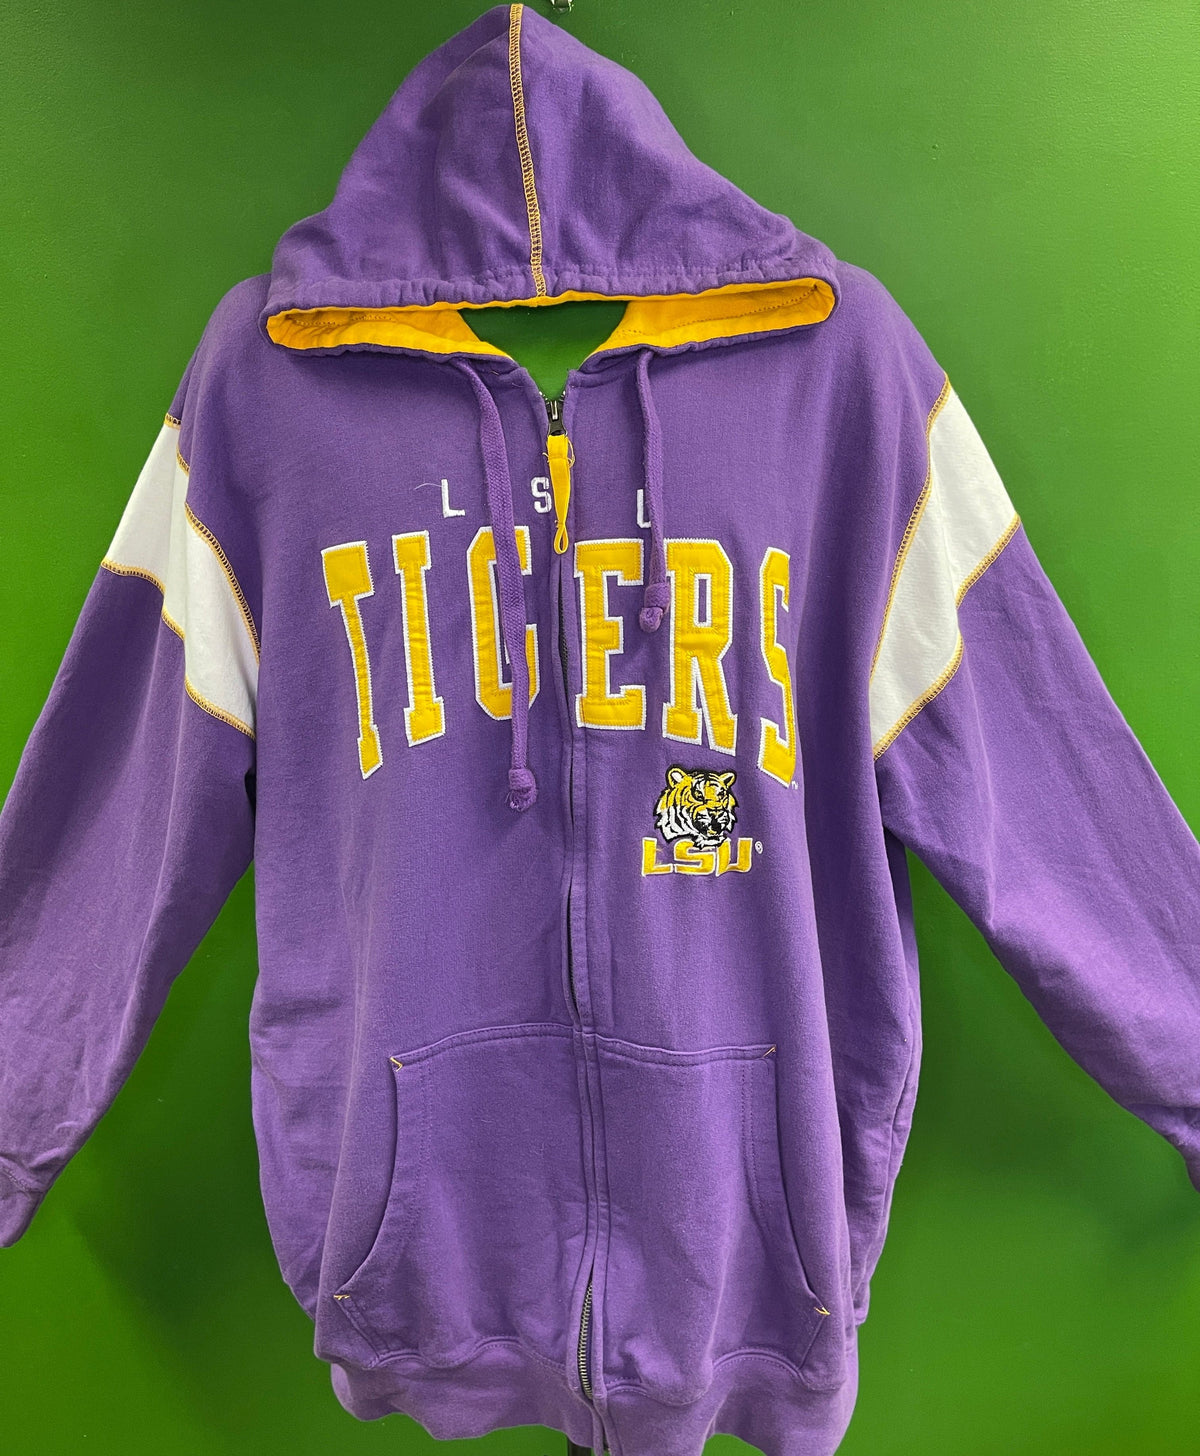 NCAA Louisiana State LSU Tigers Old School Full Zip Hoodie Jacket Men's 2X-Large